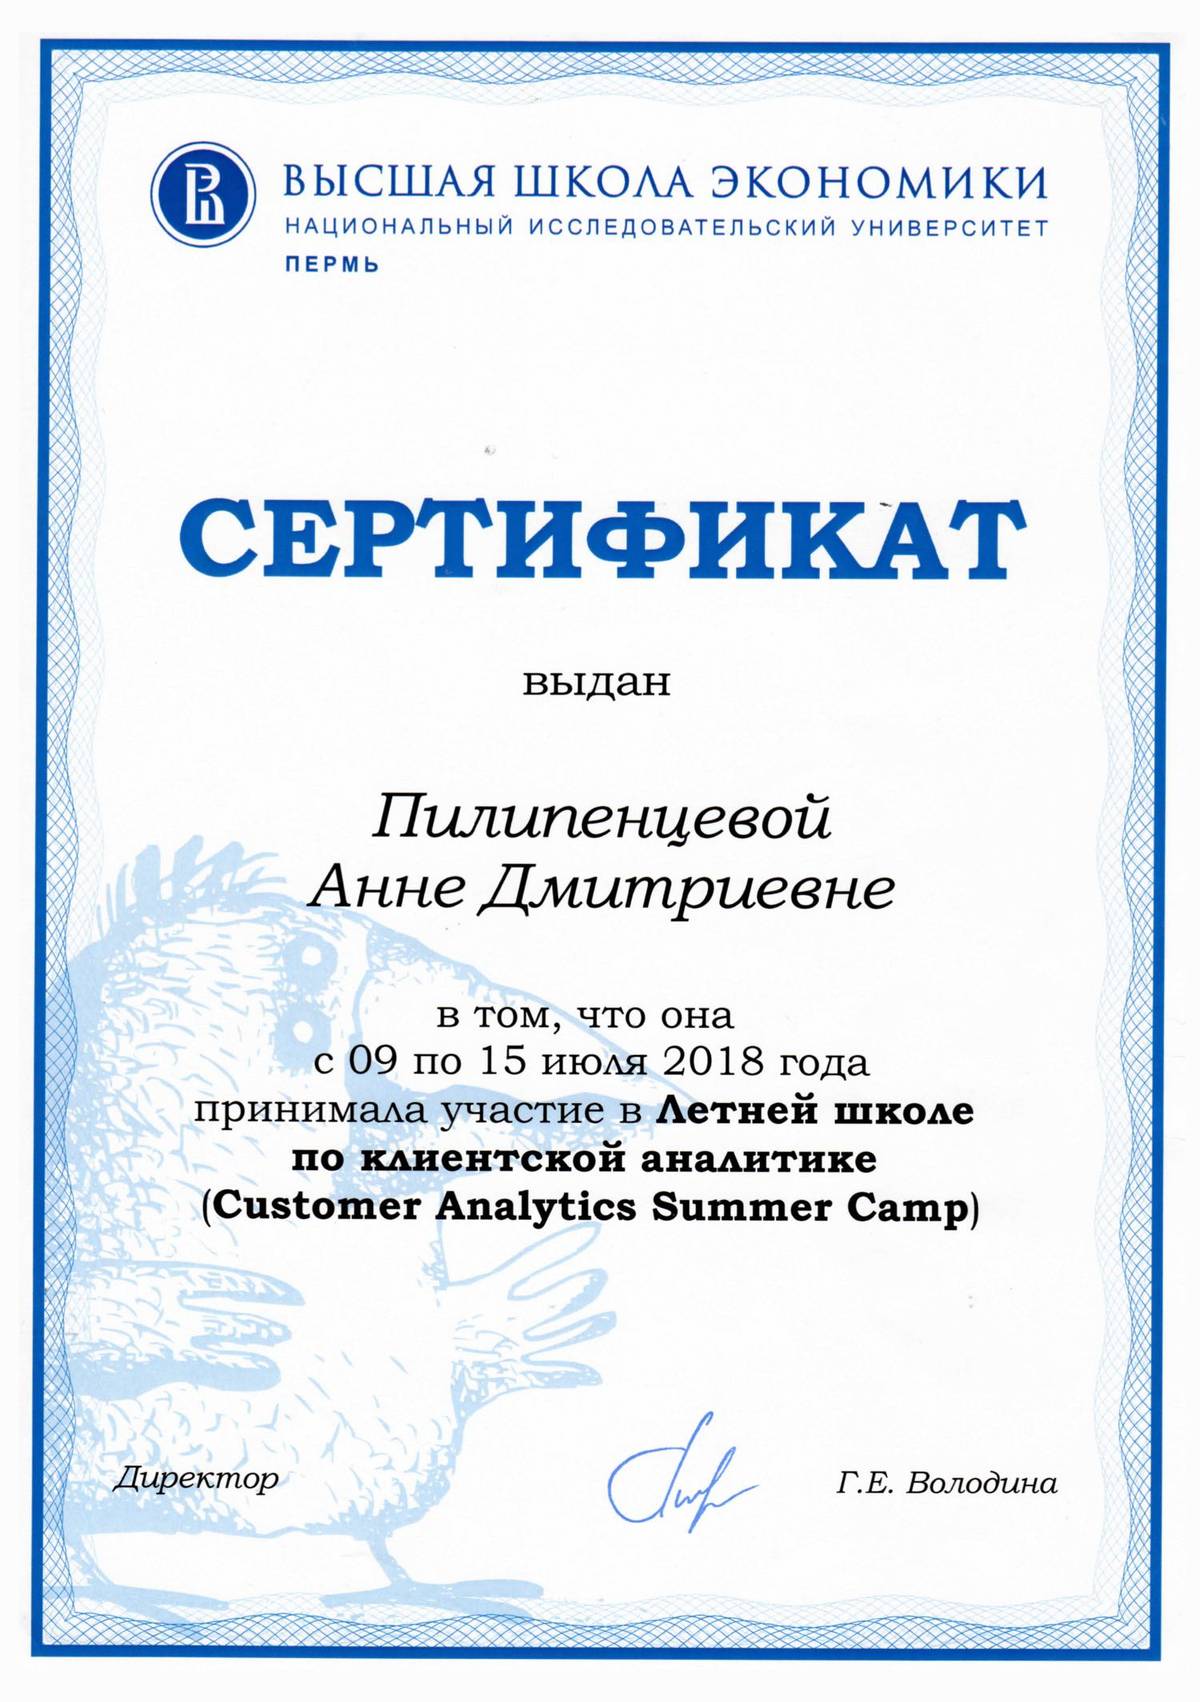 Мой сертификат за участие в летней школе по клиентской аналитике Customer Data Analytics Summer Camp